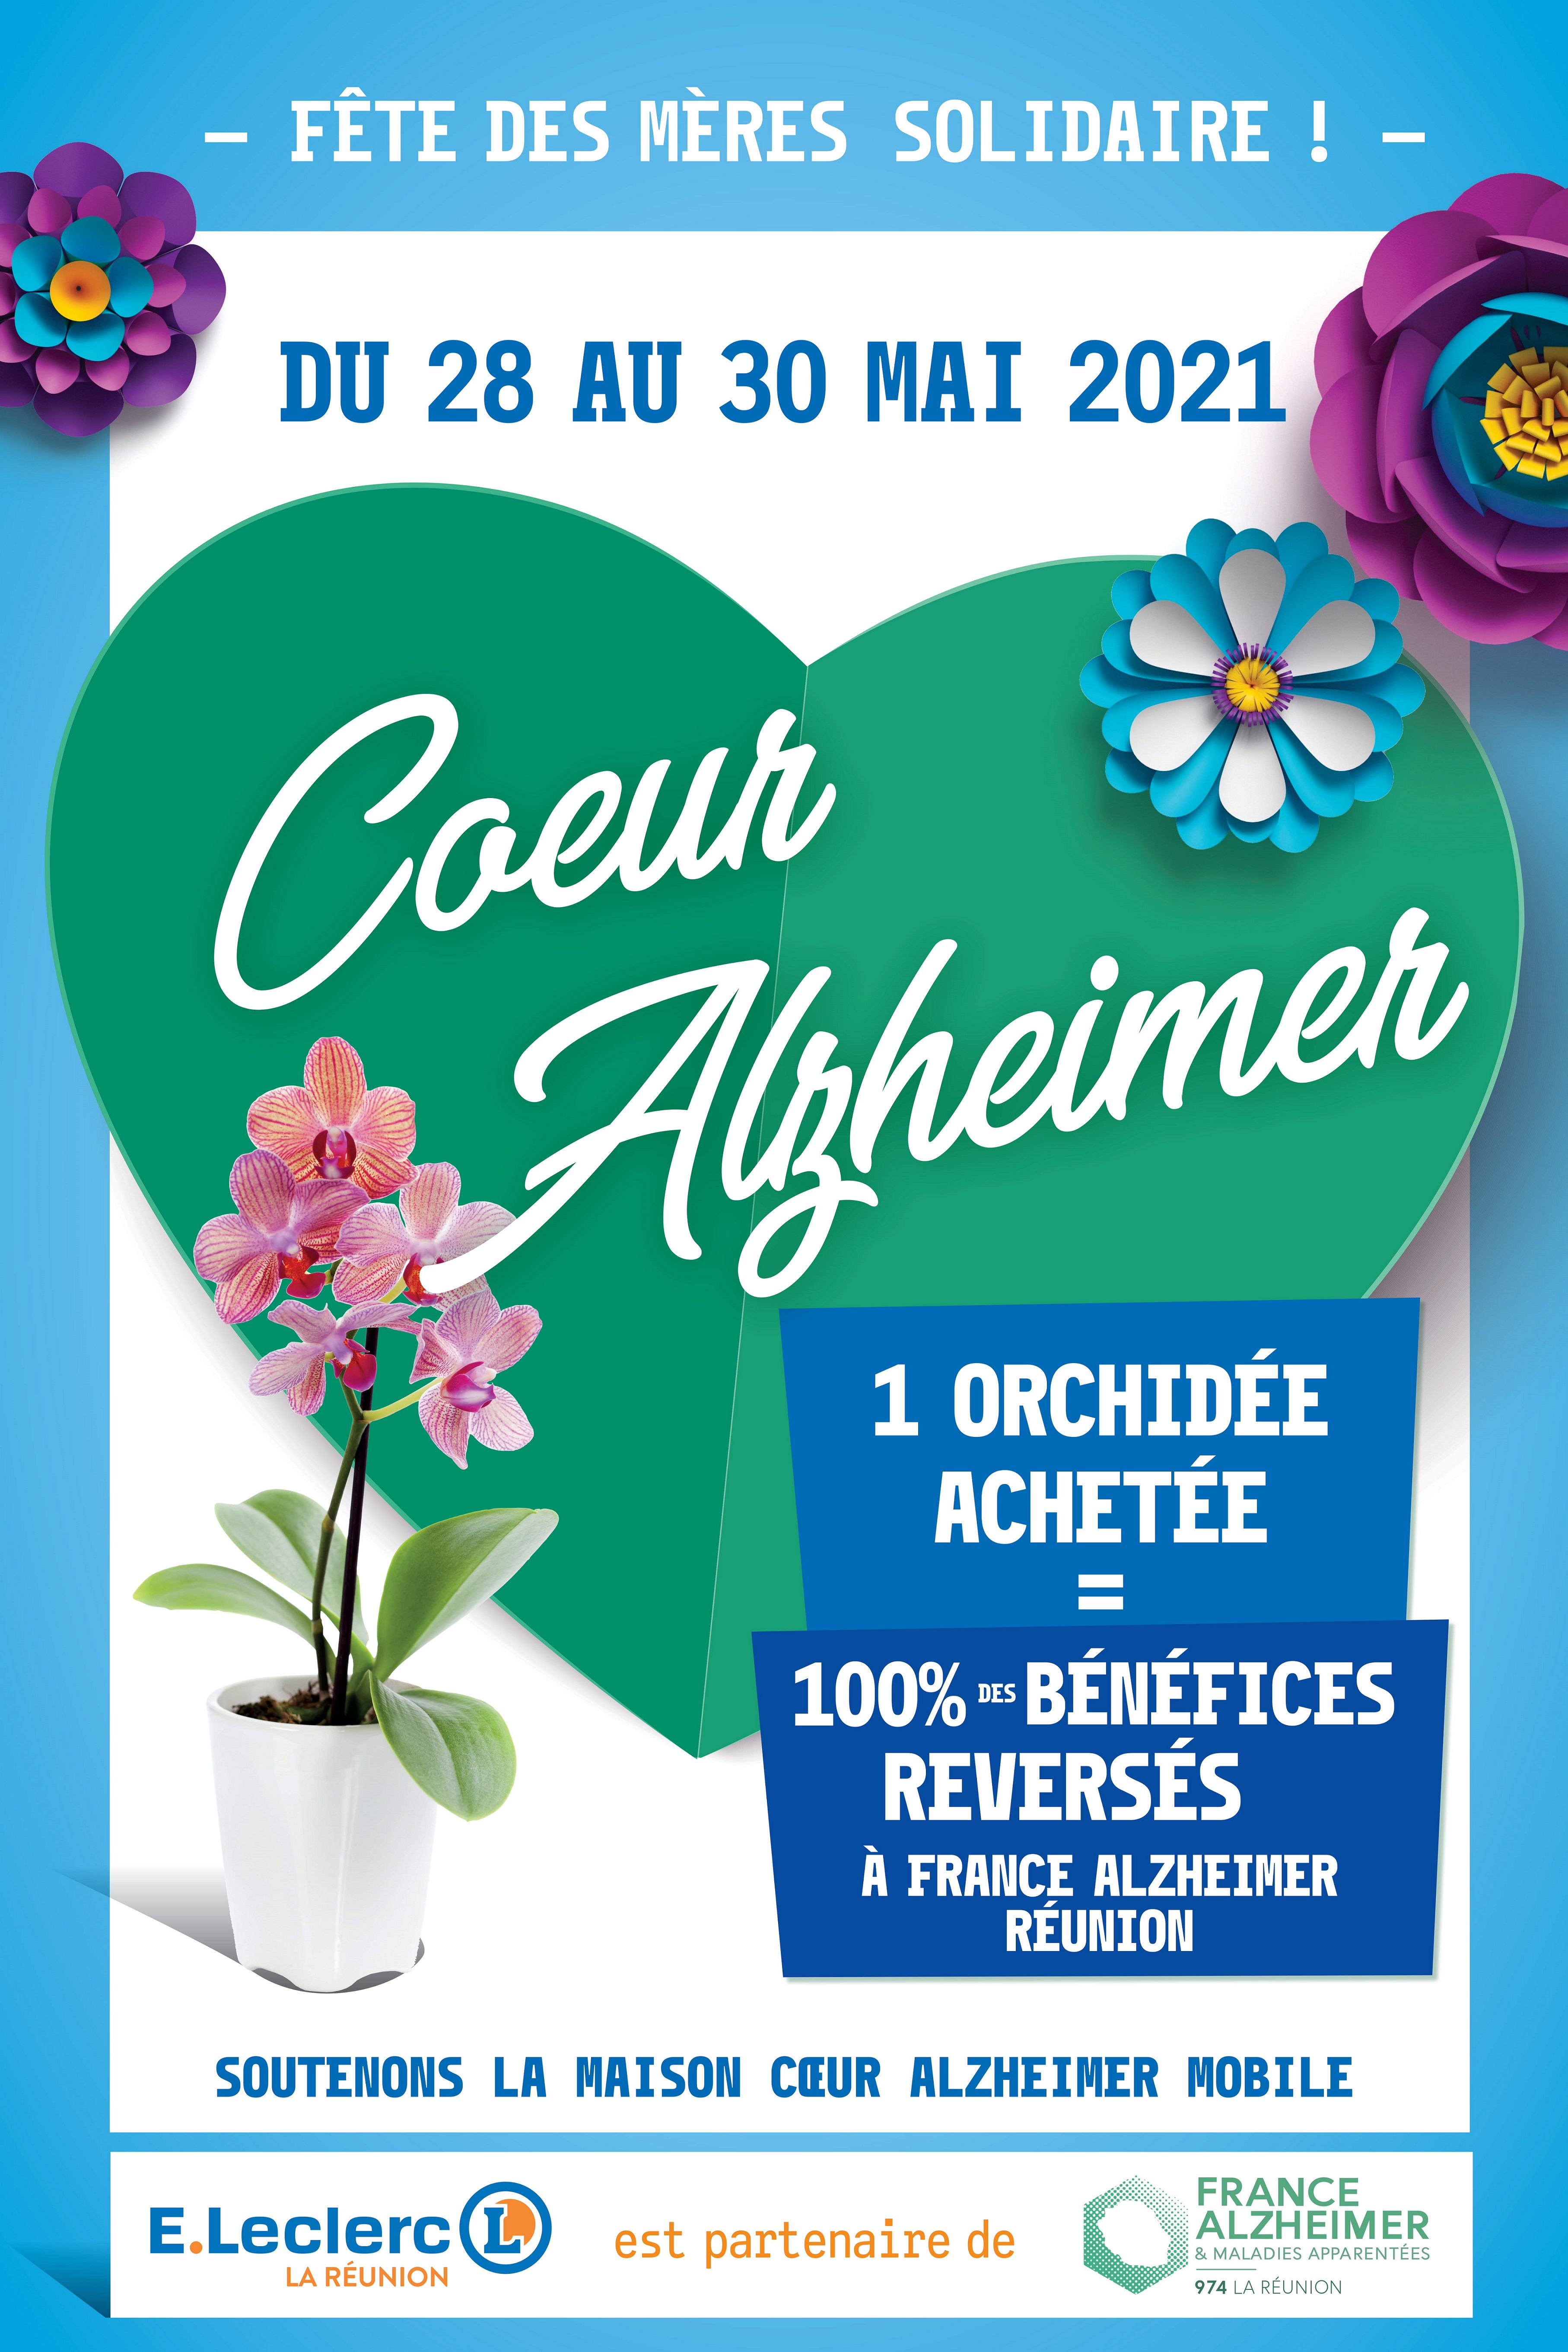 Maison cœur Alzheimer mobile, Achetez une orchidée pour une belle cause !